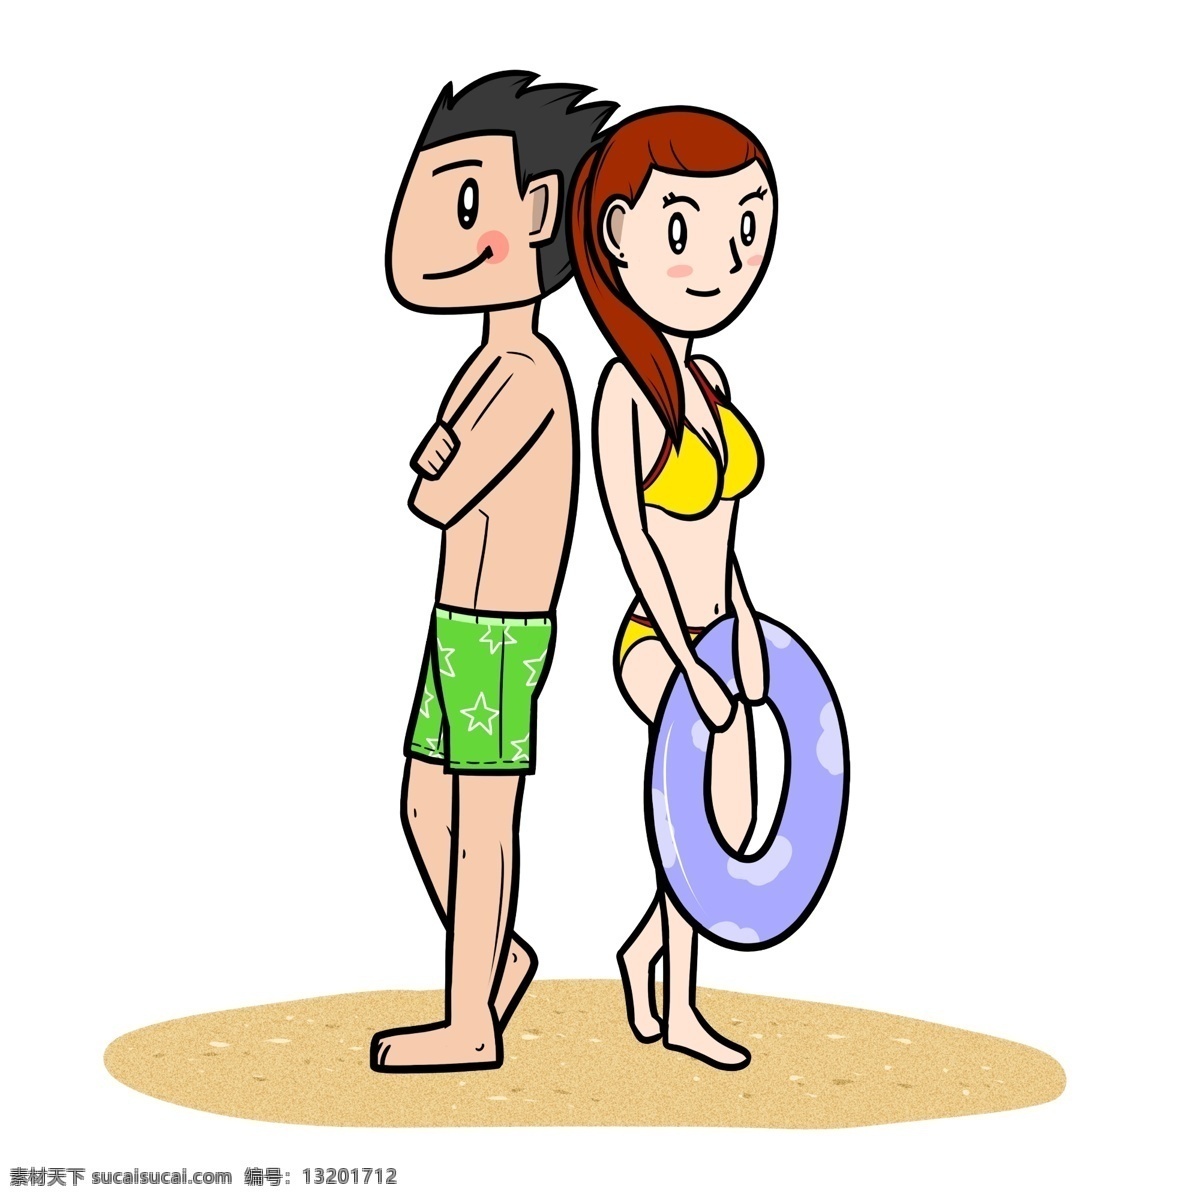 卡通 夏季 情侣 沙滩 游玩 透明 底 夏天 玩耍 海边 海滩 海边人物 夏季人物 夏天人物 卡通人物 卡通夏季